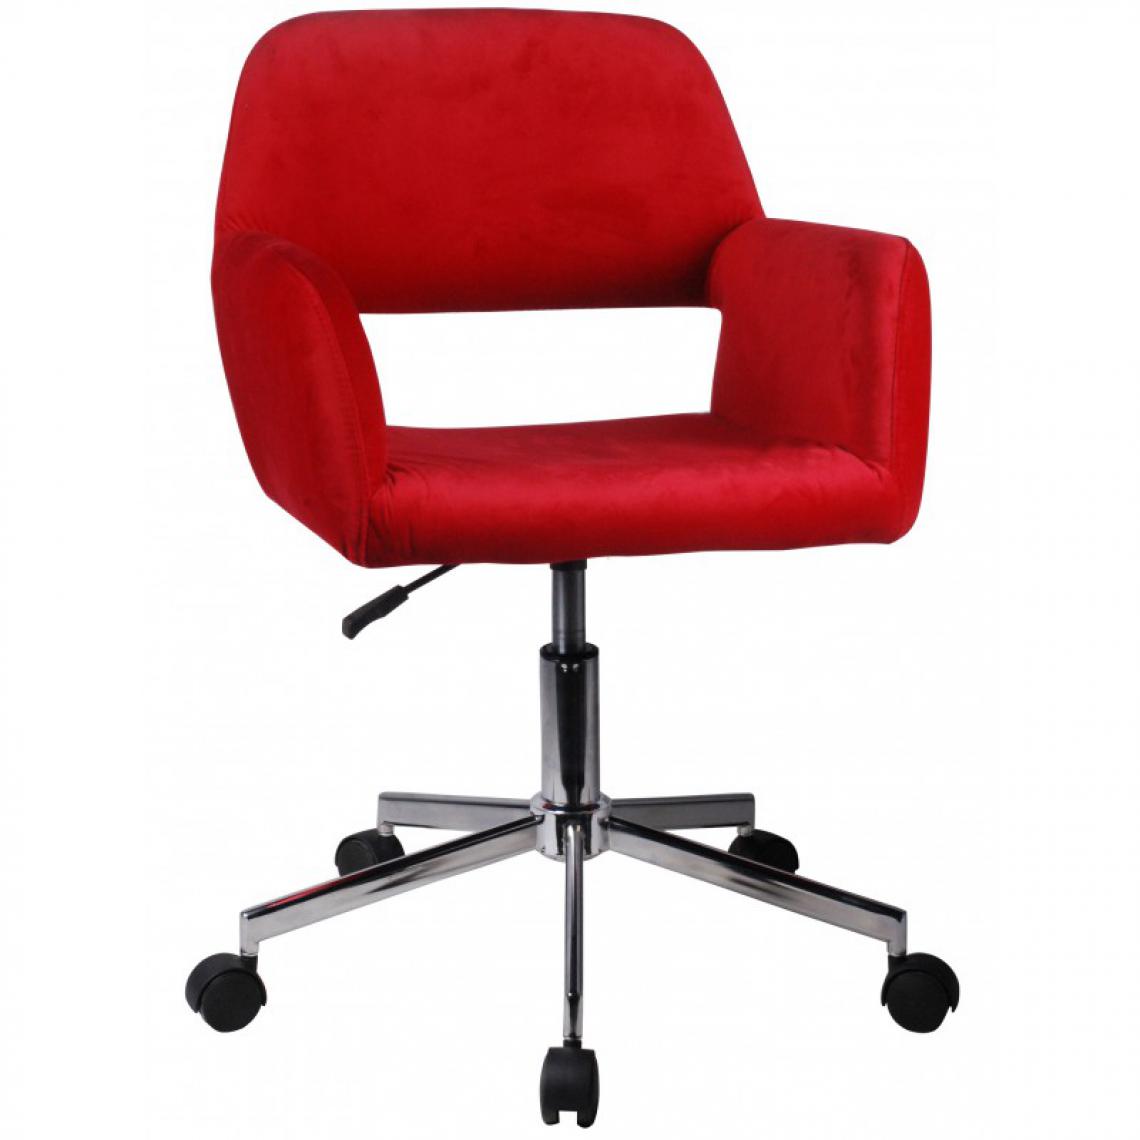 Hucoco - ANISA | Chaise pivotante en velours élégant | Chaise de bureau | Base en acier chromé | Réglable en hauteur 78-90cm - Rouge - Chaises